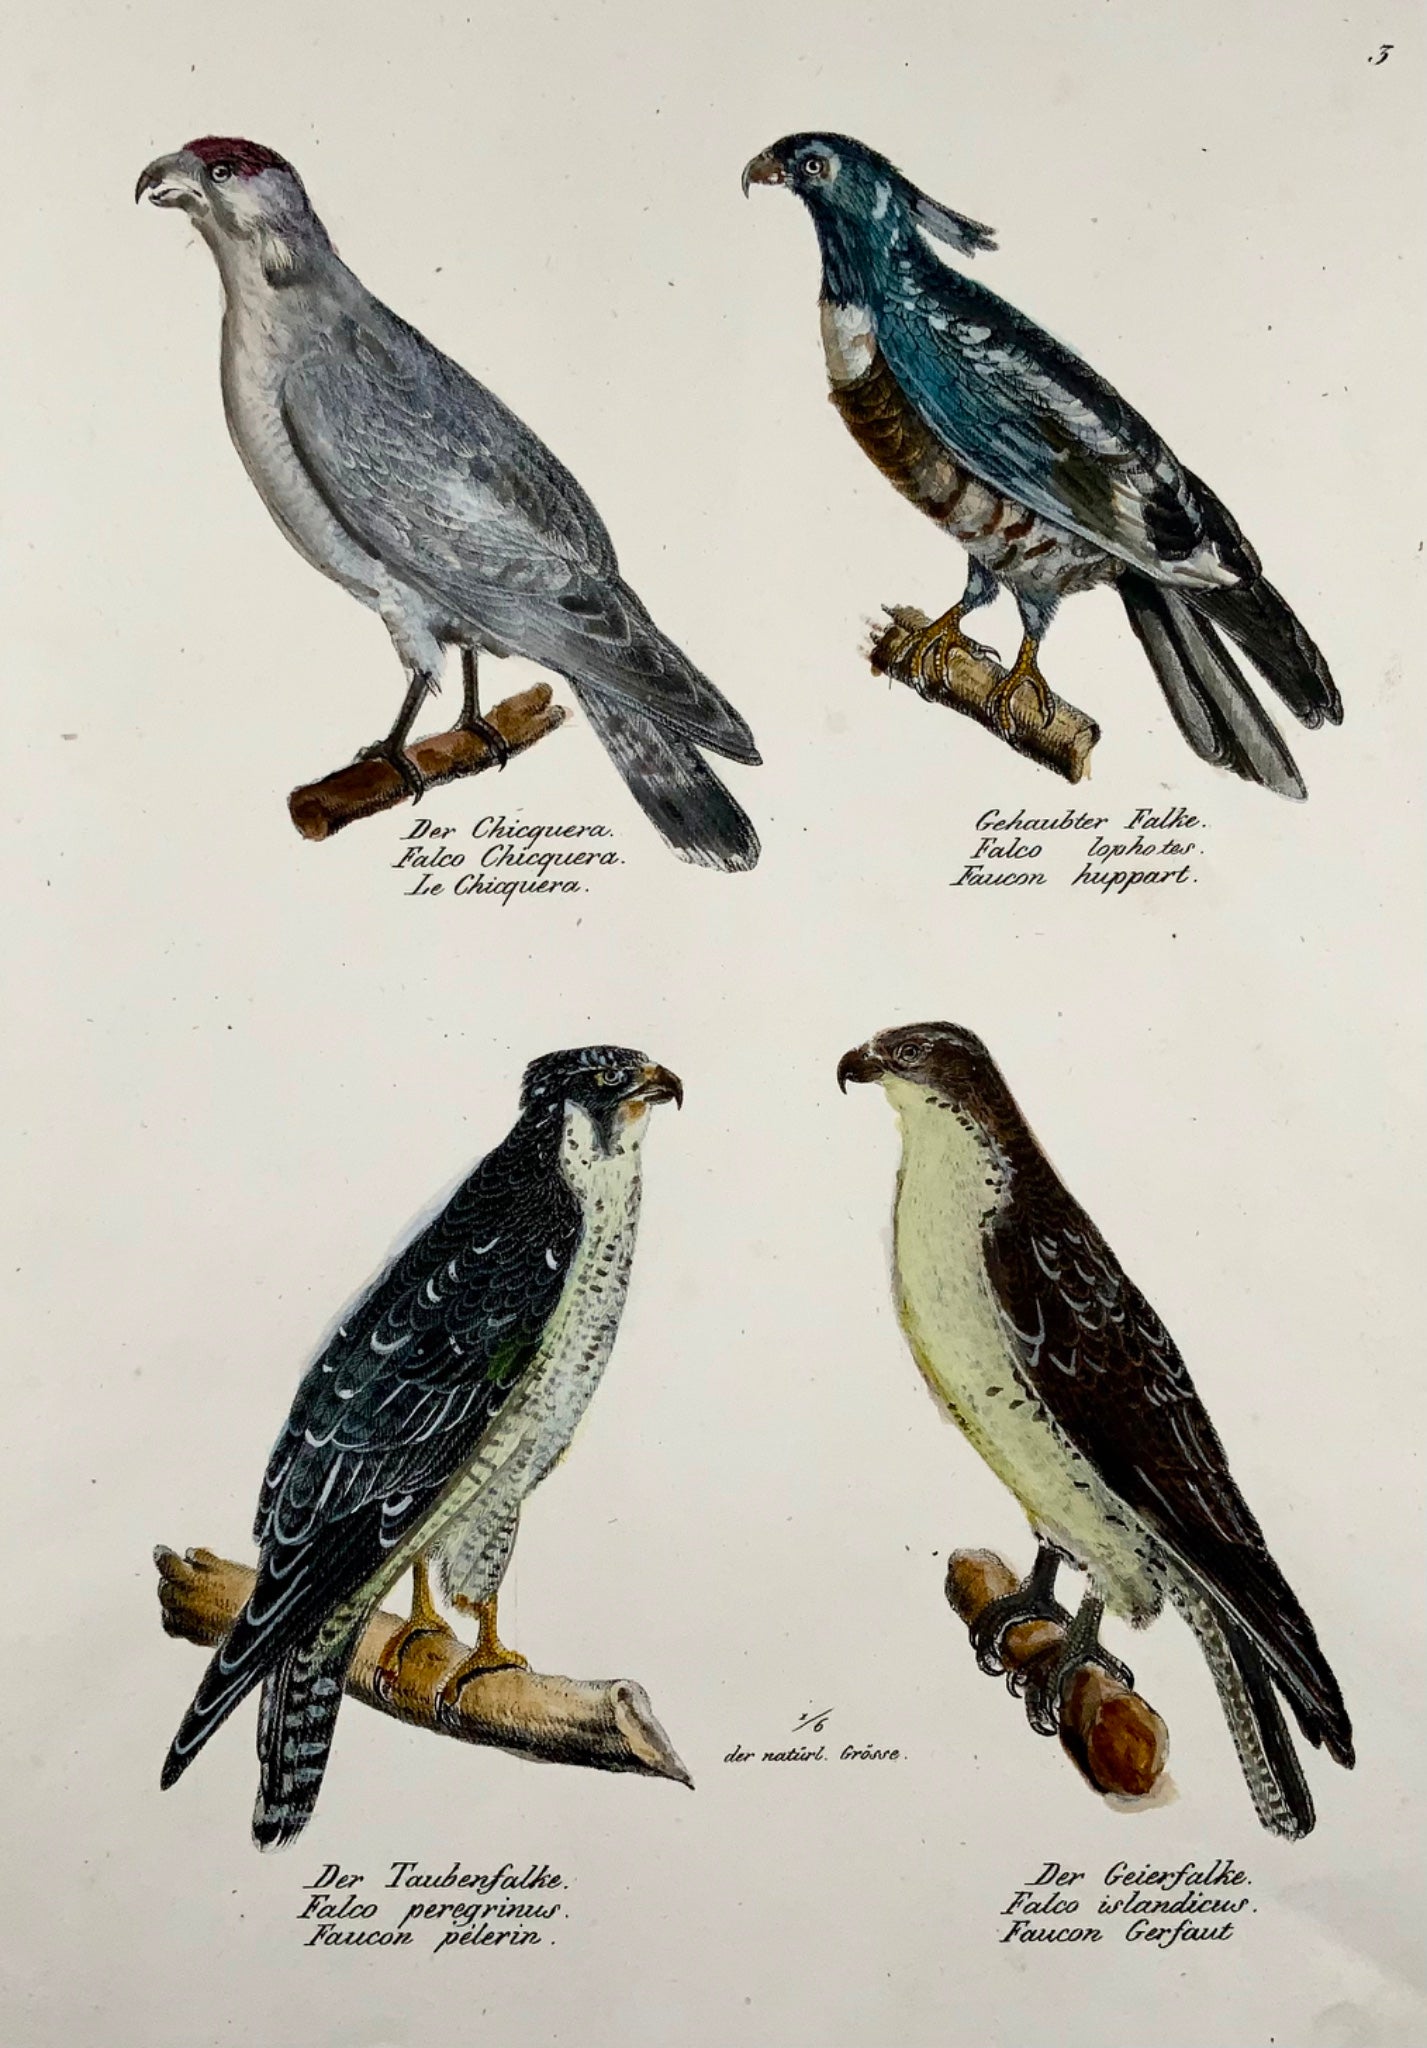 1830 FALCONS, Oiseaux - Ornithologie Brodtmann lithographie FOLIO colorée à la main